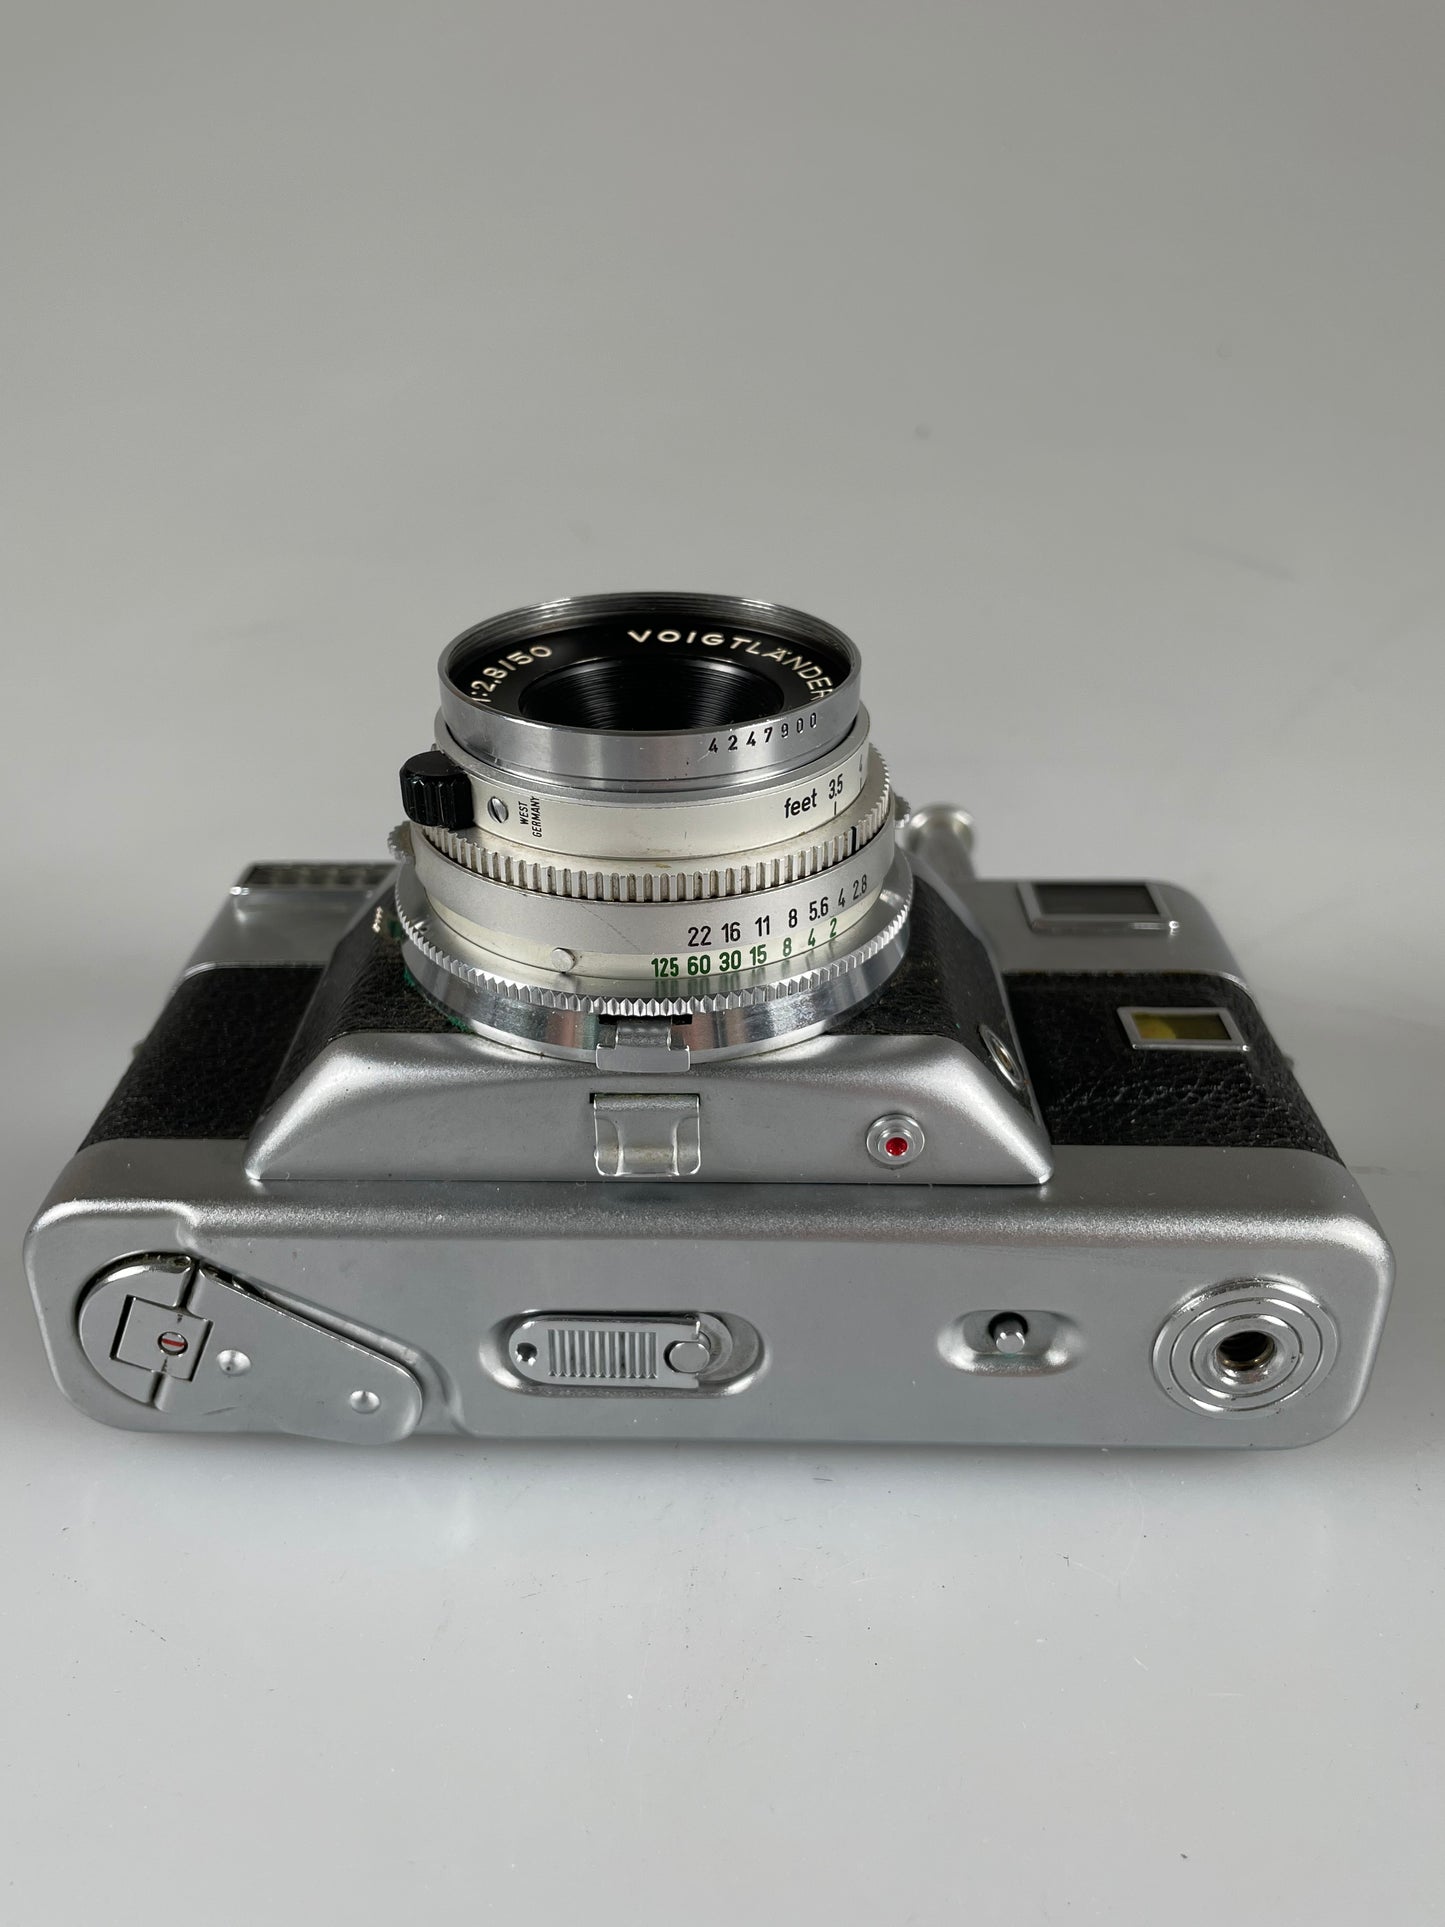 Voigtlander Vitessa T 35mm Film Camera w/ Color Skopar 50mm f2.8 Lens